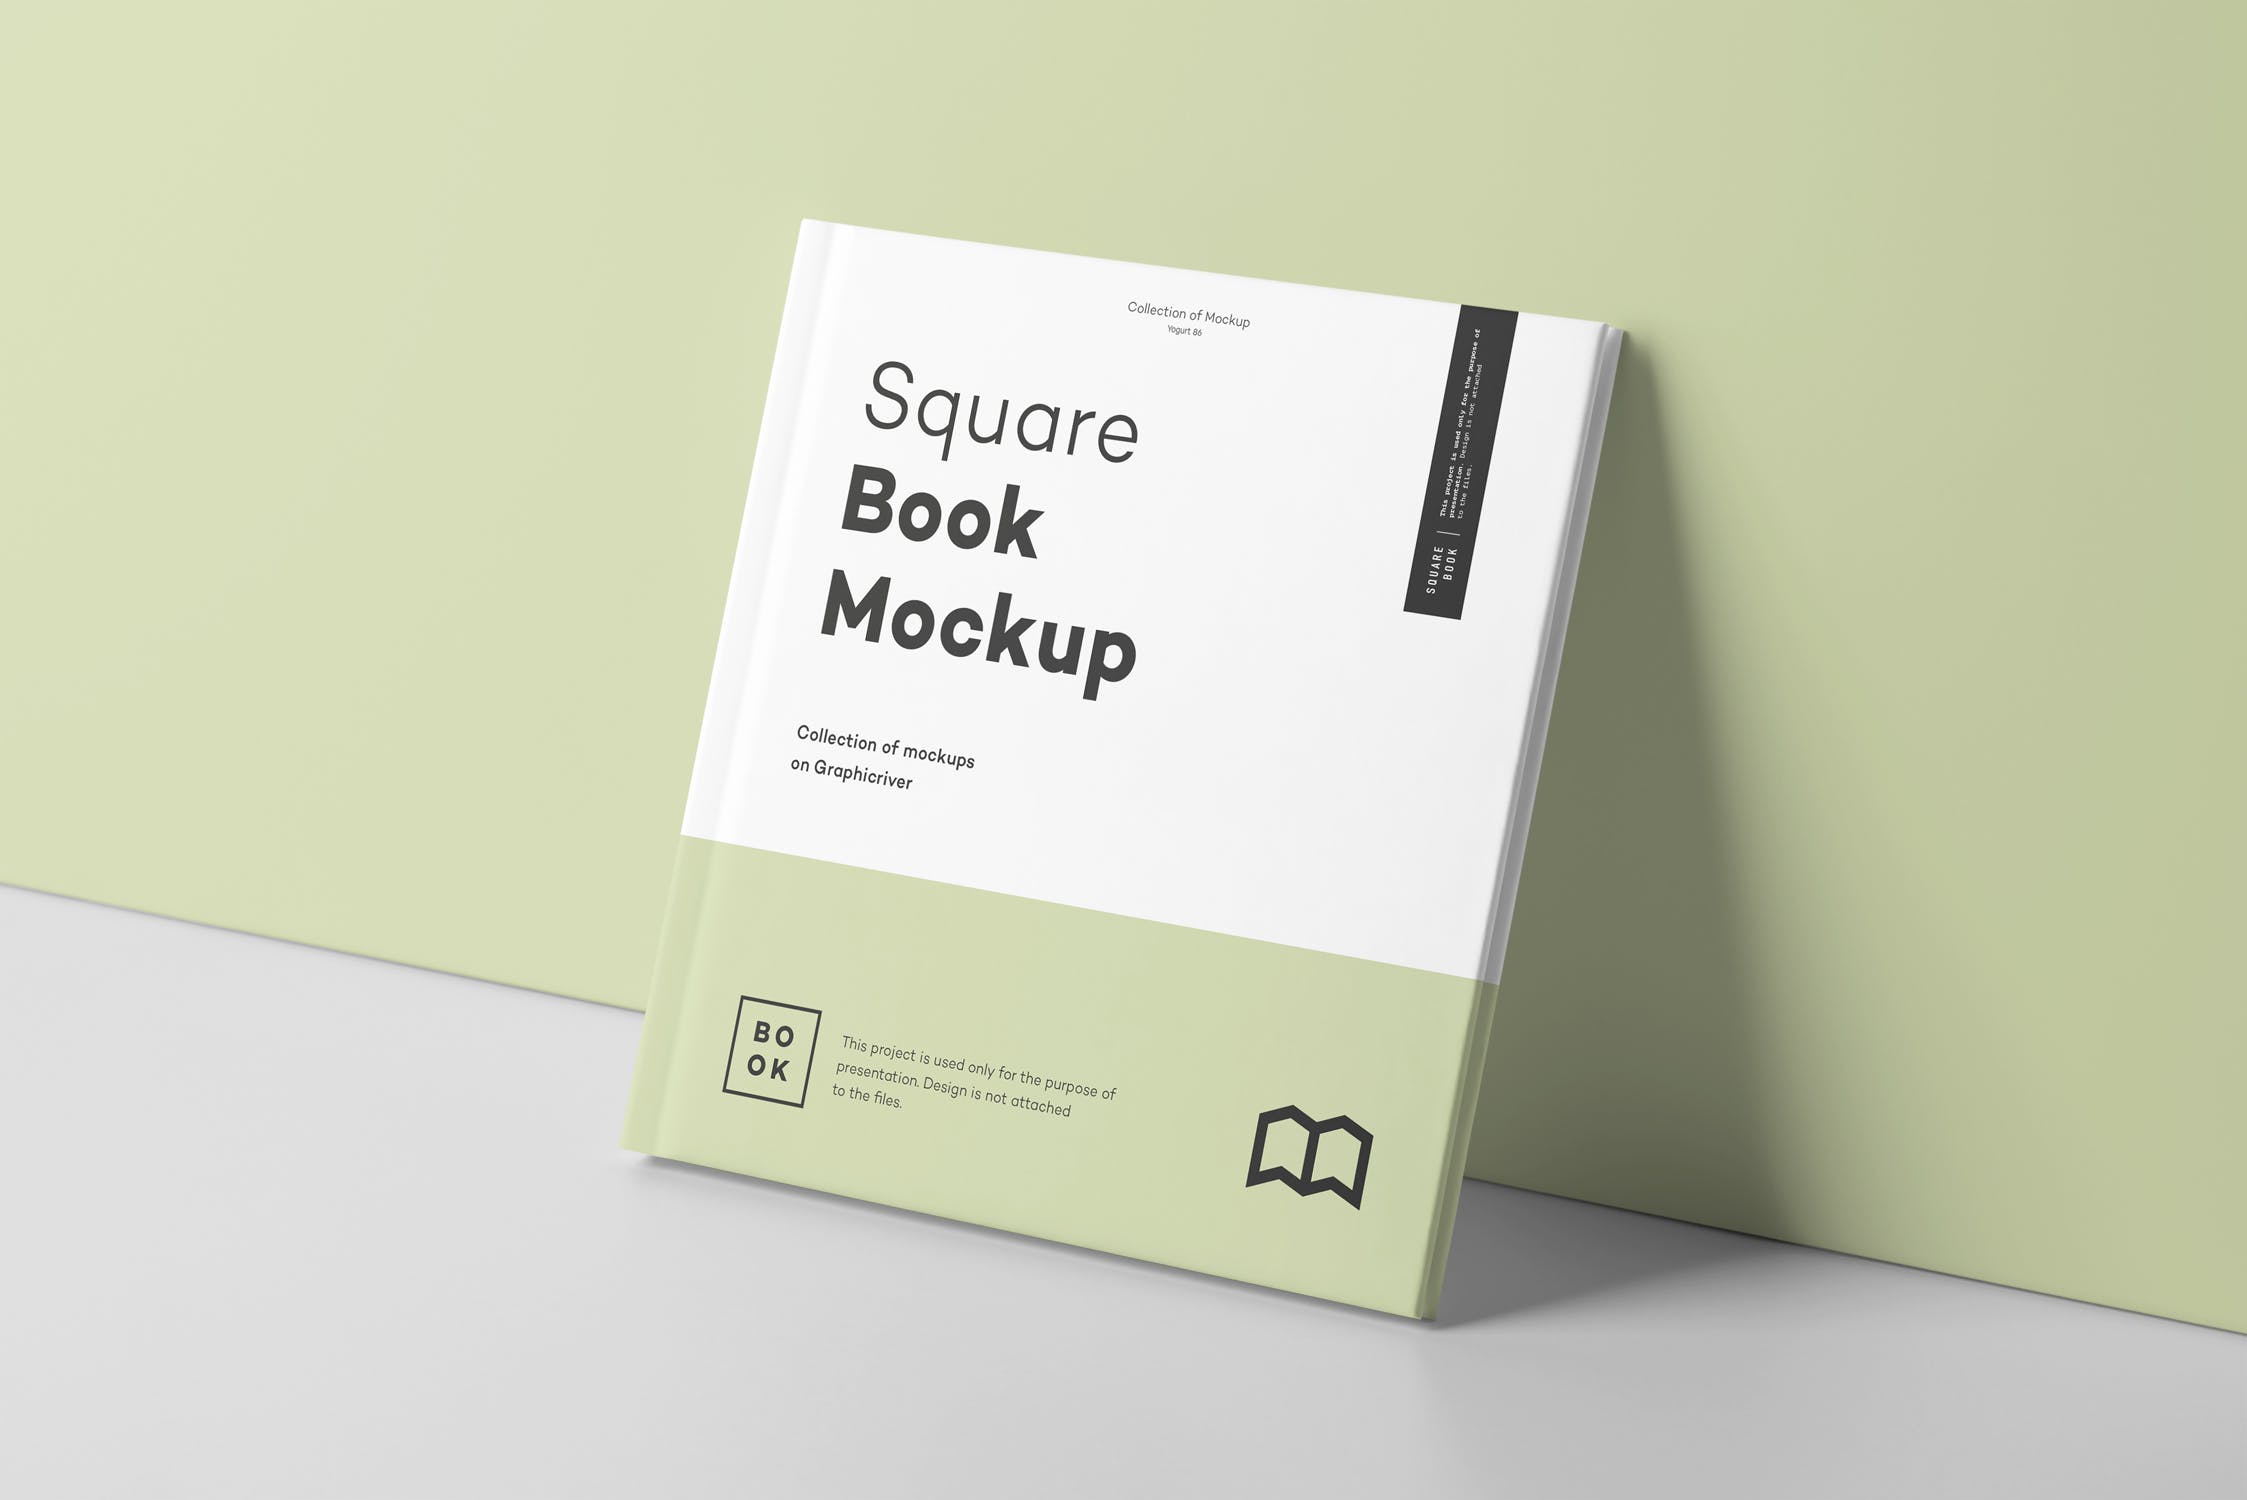 方形精装图书封面&内页版式设计预览样机 Square Book Mock up 2插图(6)